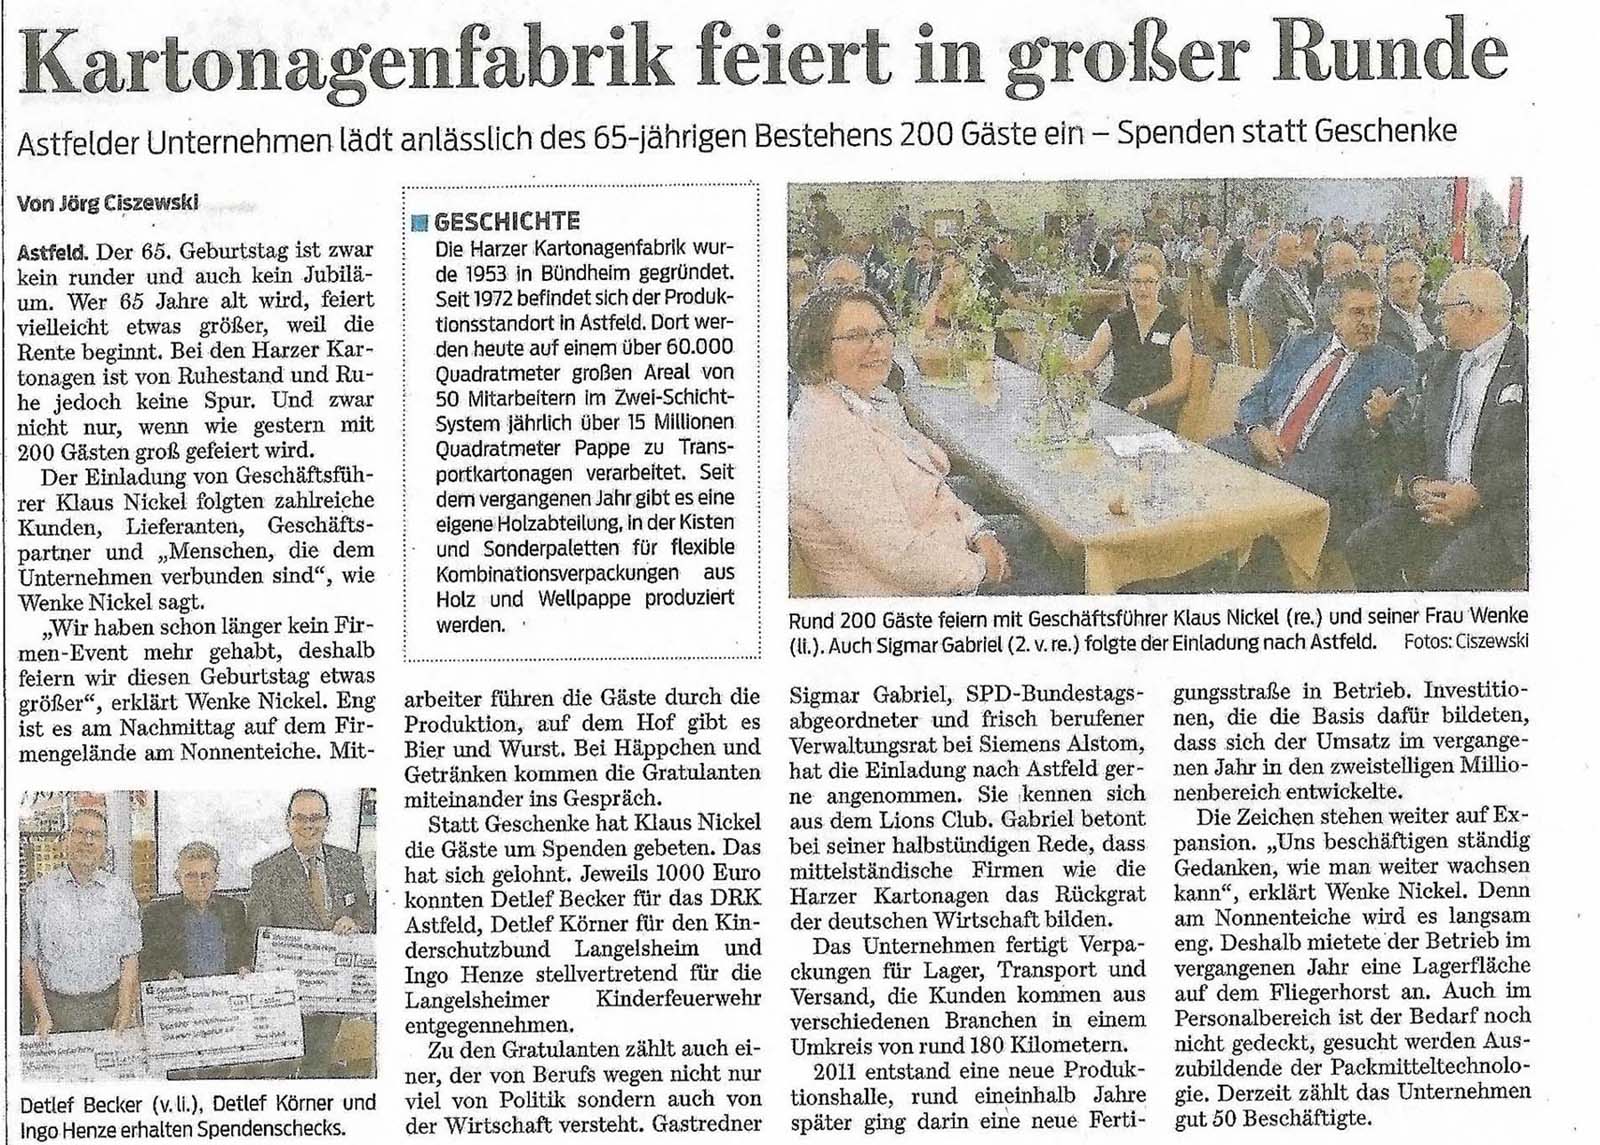 Artikel Goslarsche Zeitung 2018 6 21 65 Jahre Harzer Kartonagen